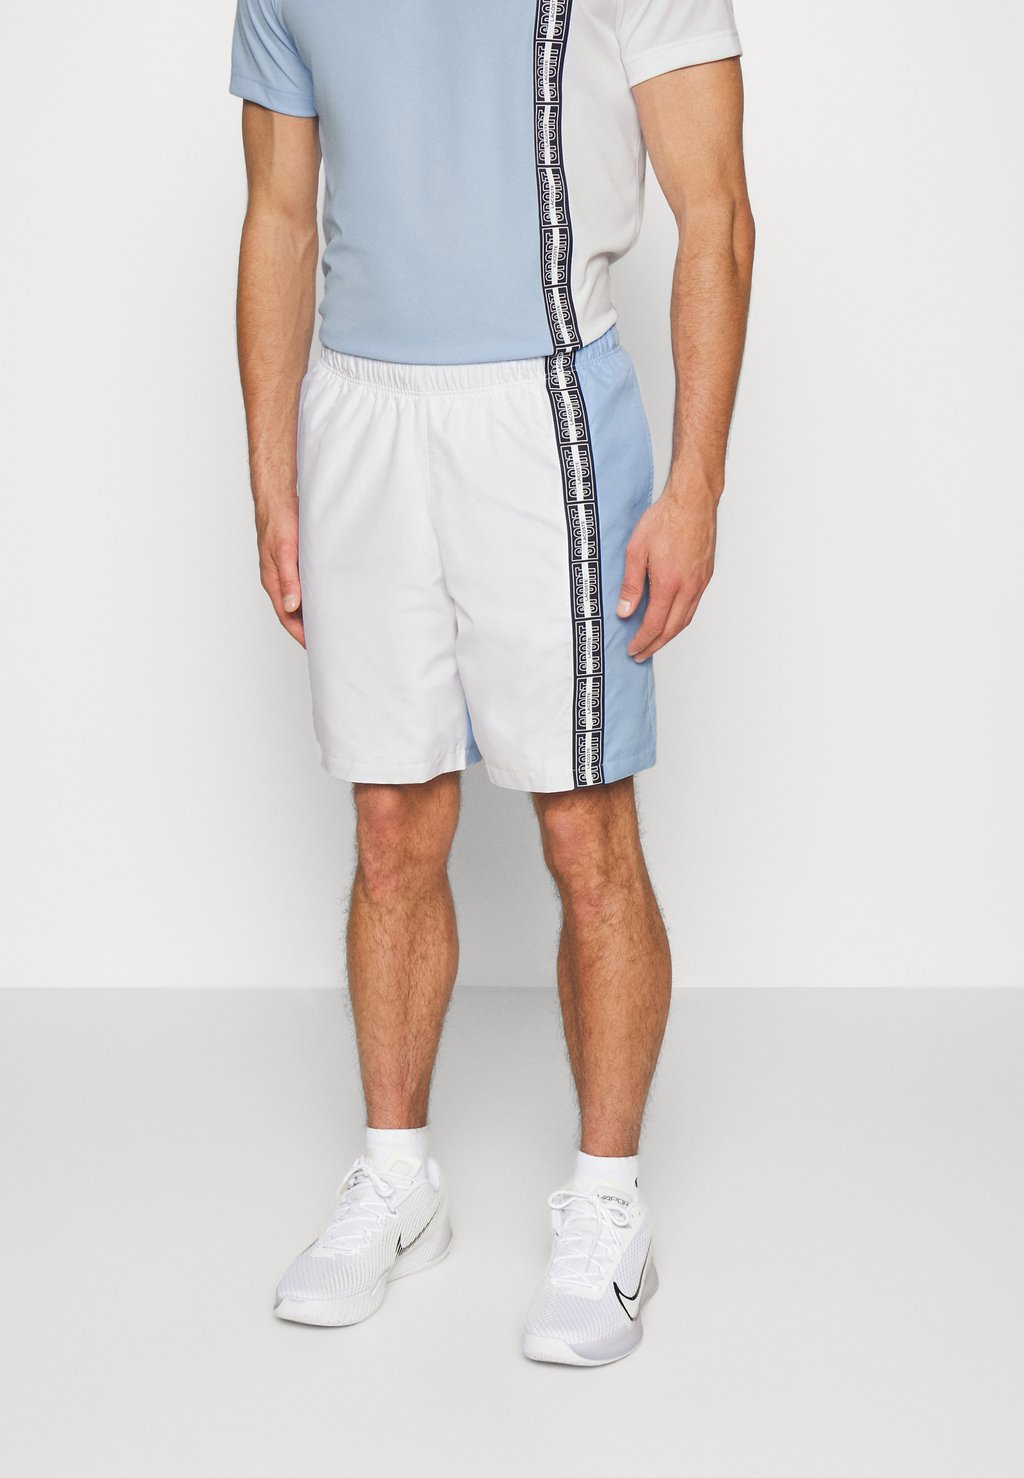 Спортивные шорты Tennis Lacoste, цвет white/navy blue спортивные шорты shorts tennis players lacoste sport цвет navy blue